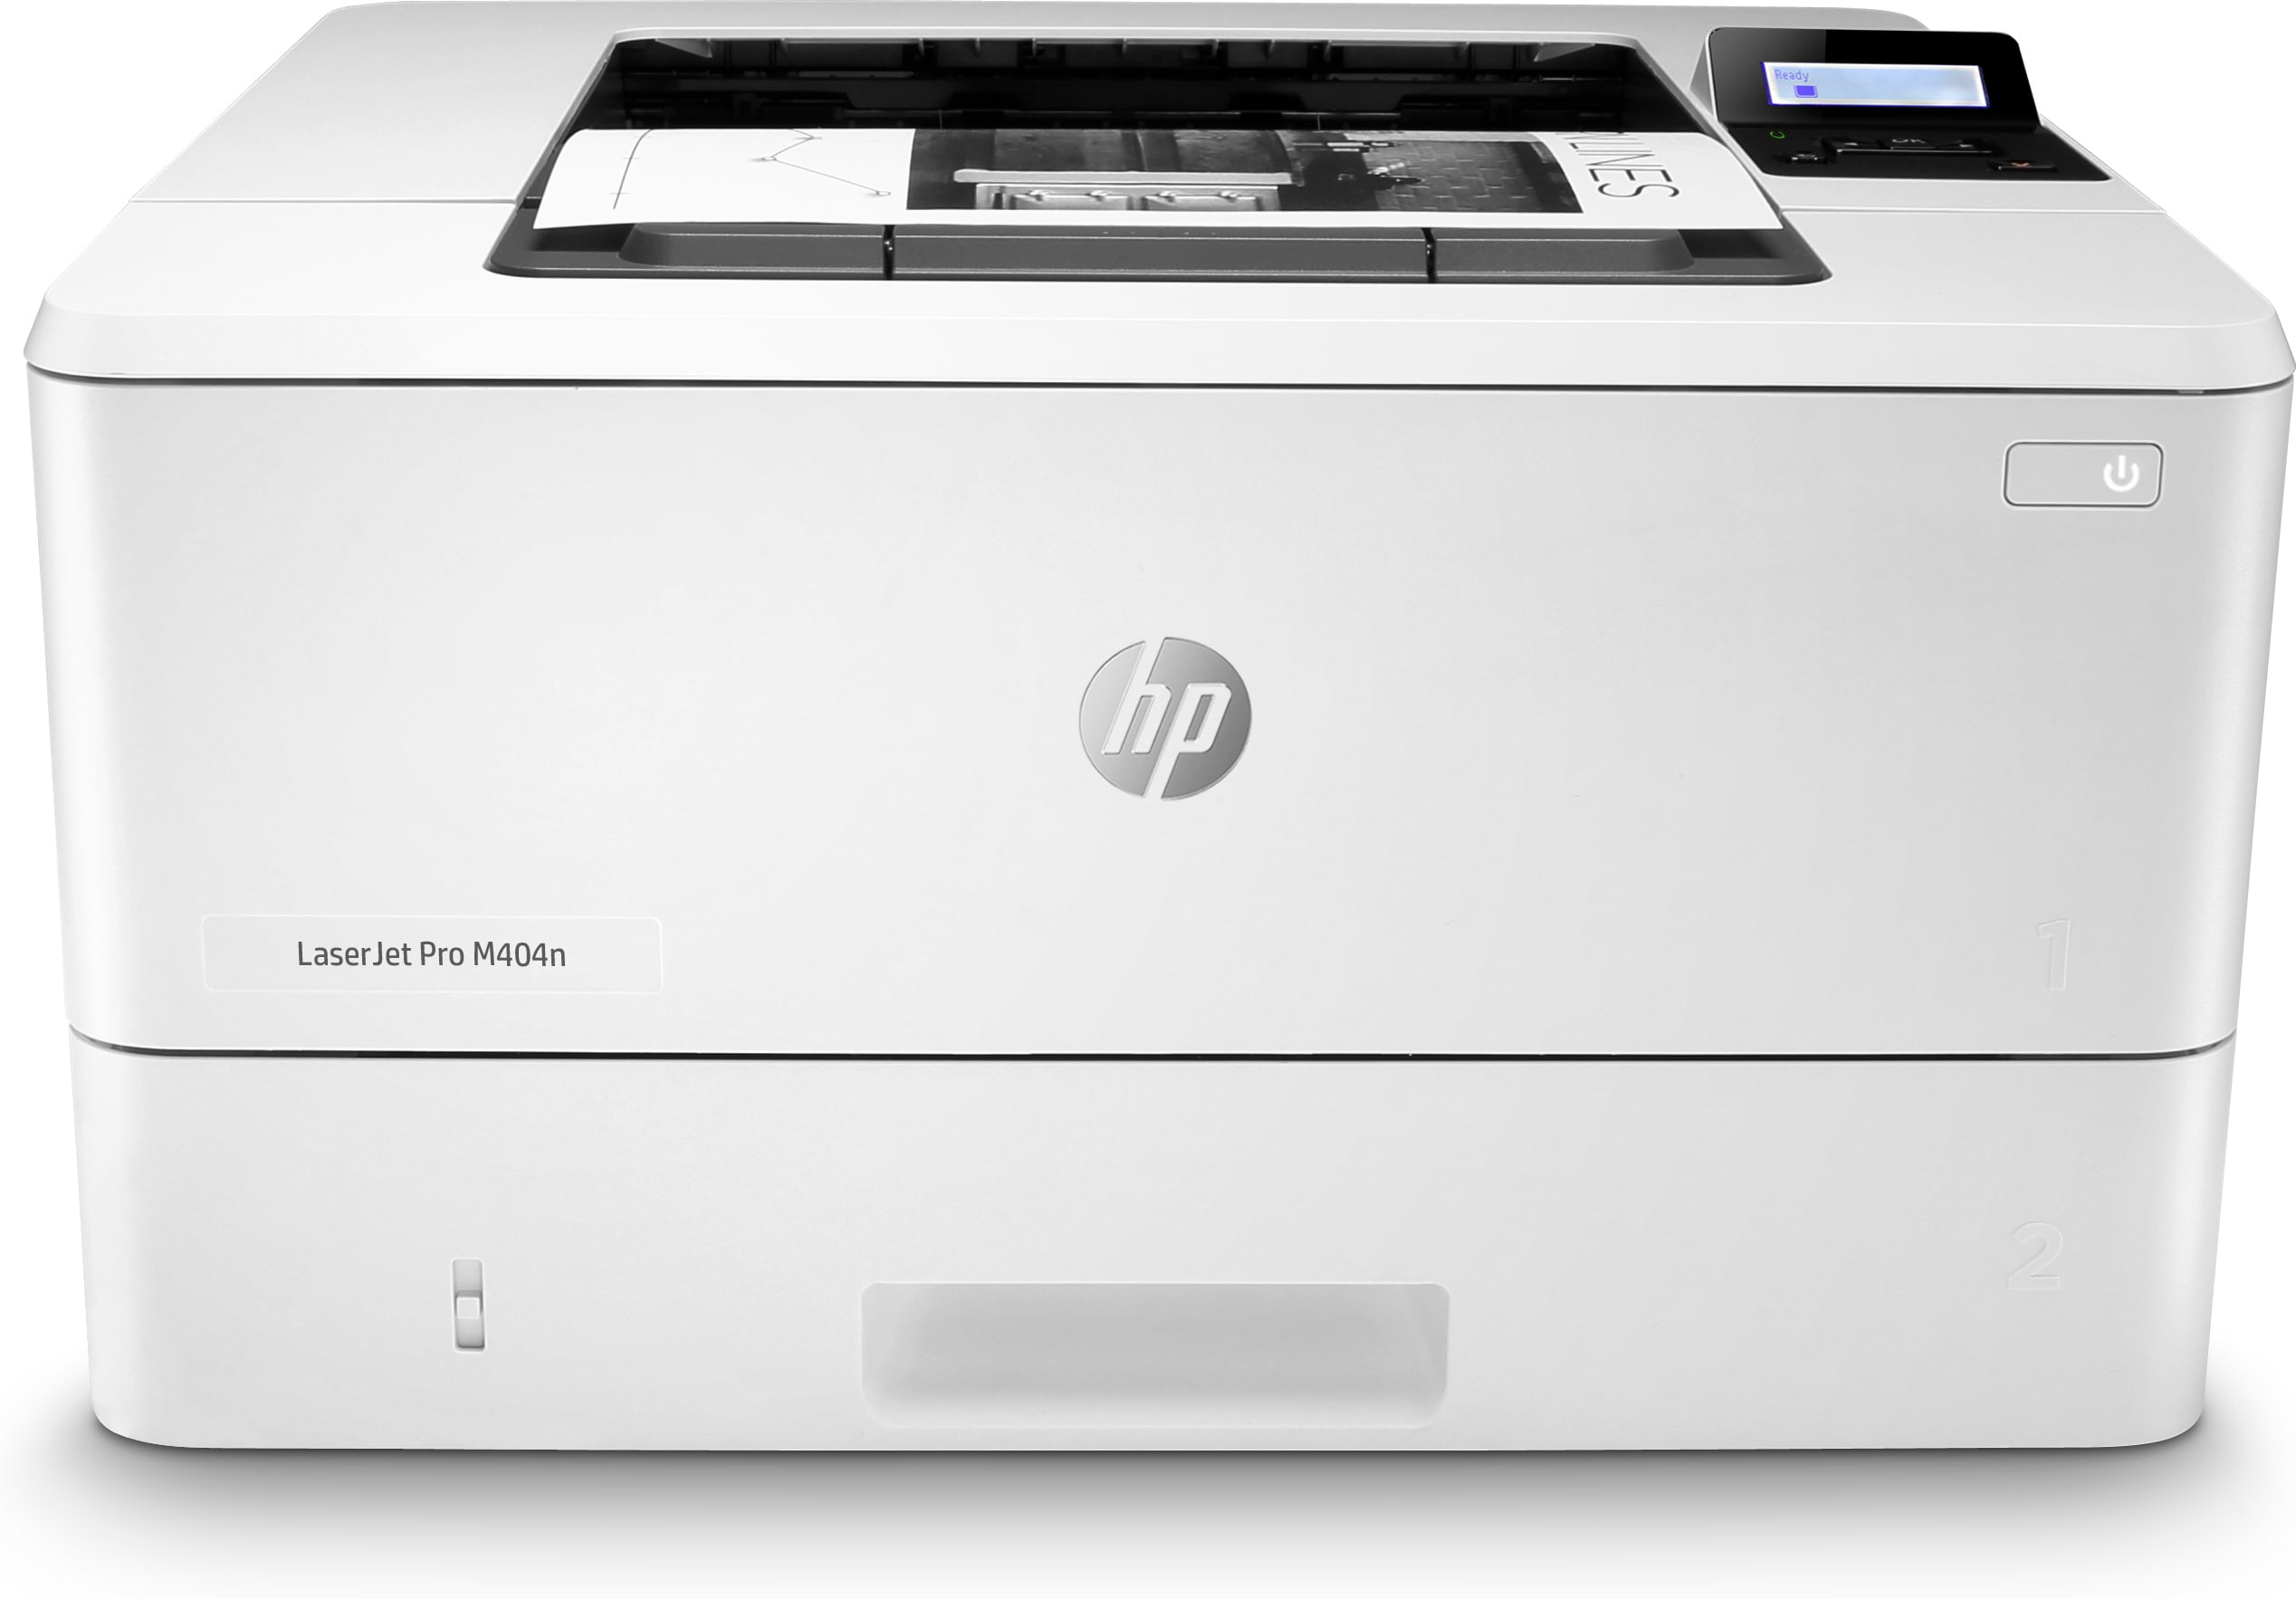 HP LASERJET PRO M404n STAMPANTE LASER B/N A4 4800 X 600 DPI [W1A52A#B19]